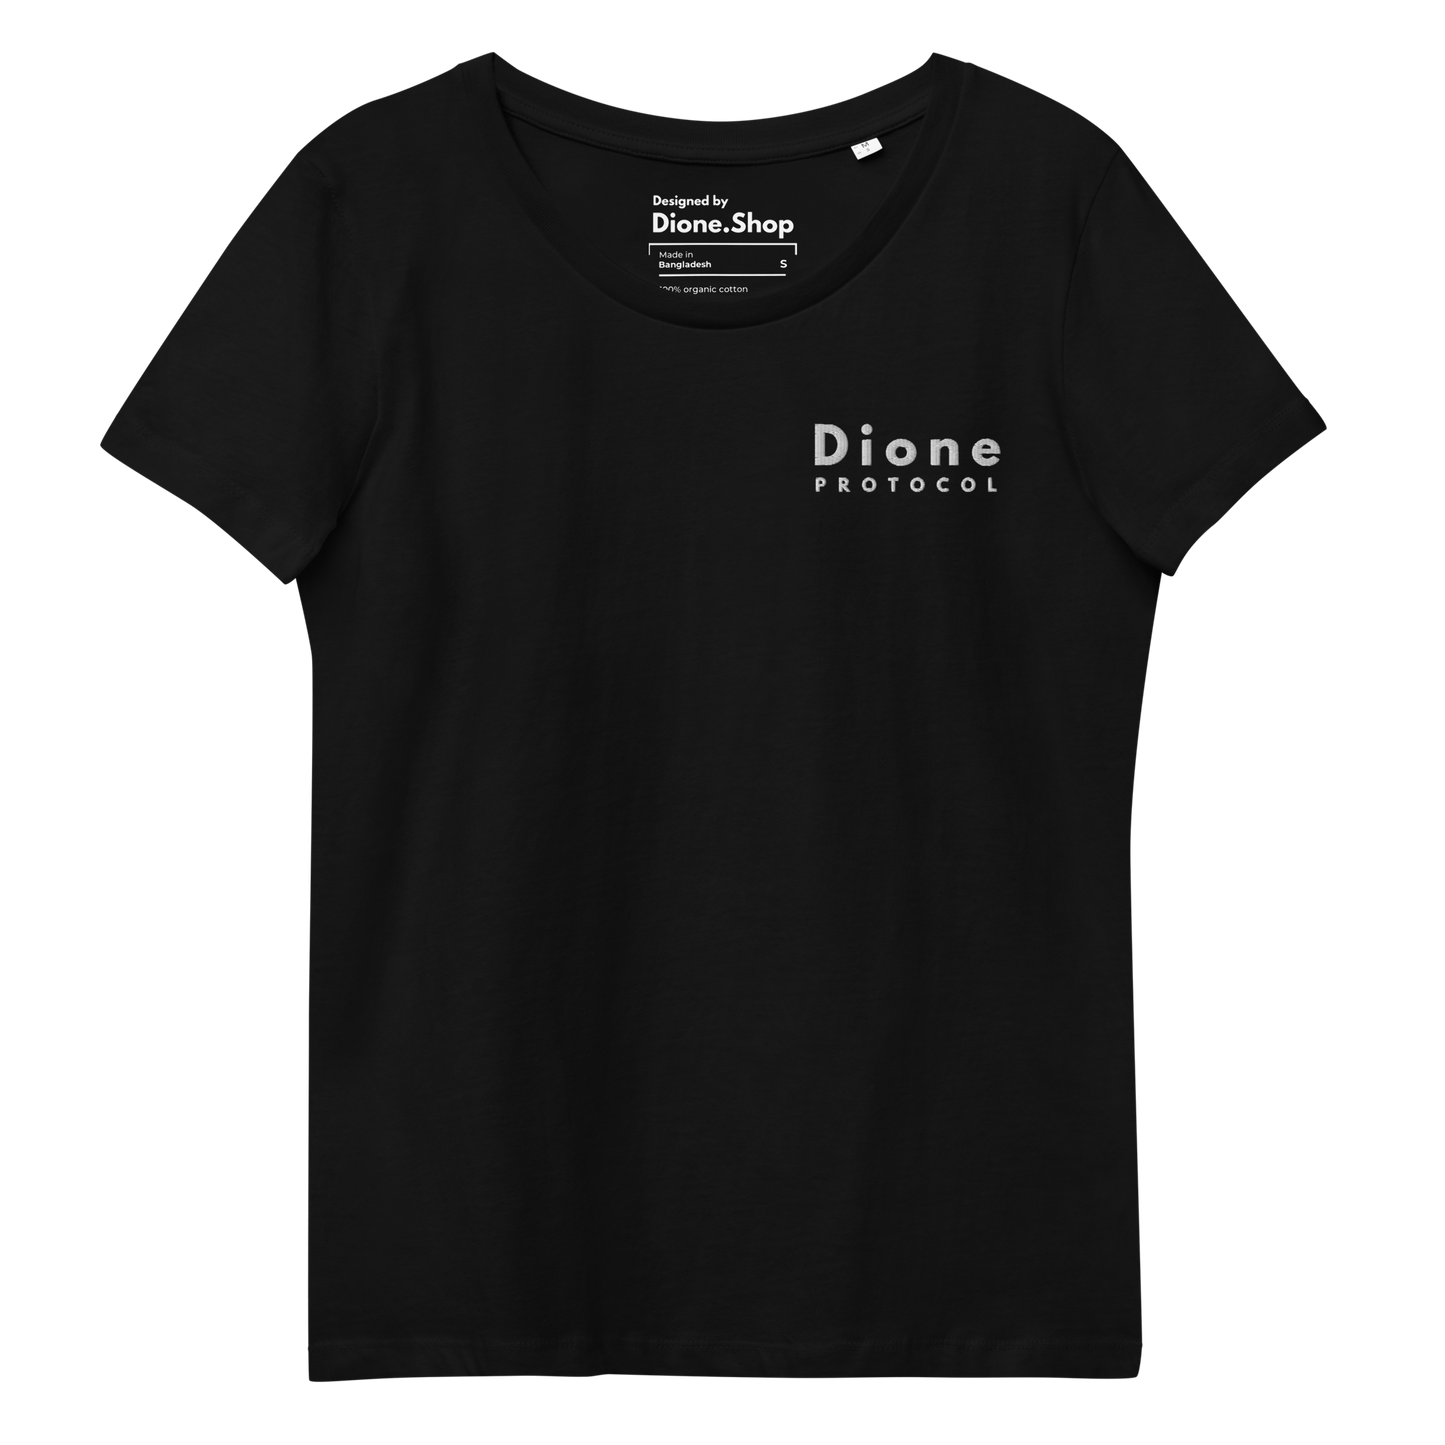 Maglietta da donna - Discreet V1.0 - Nera - Premium